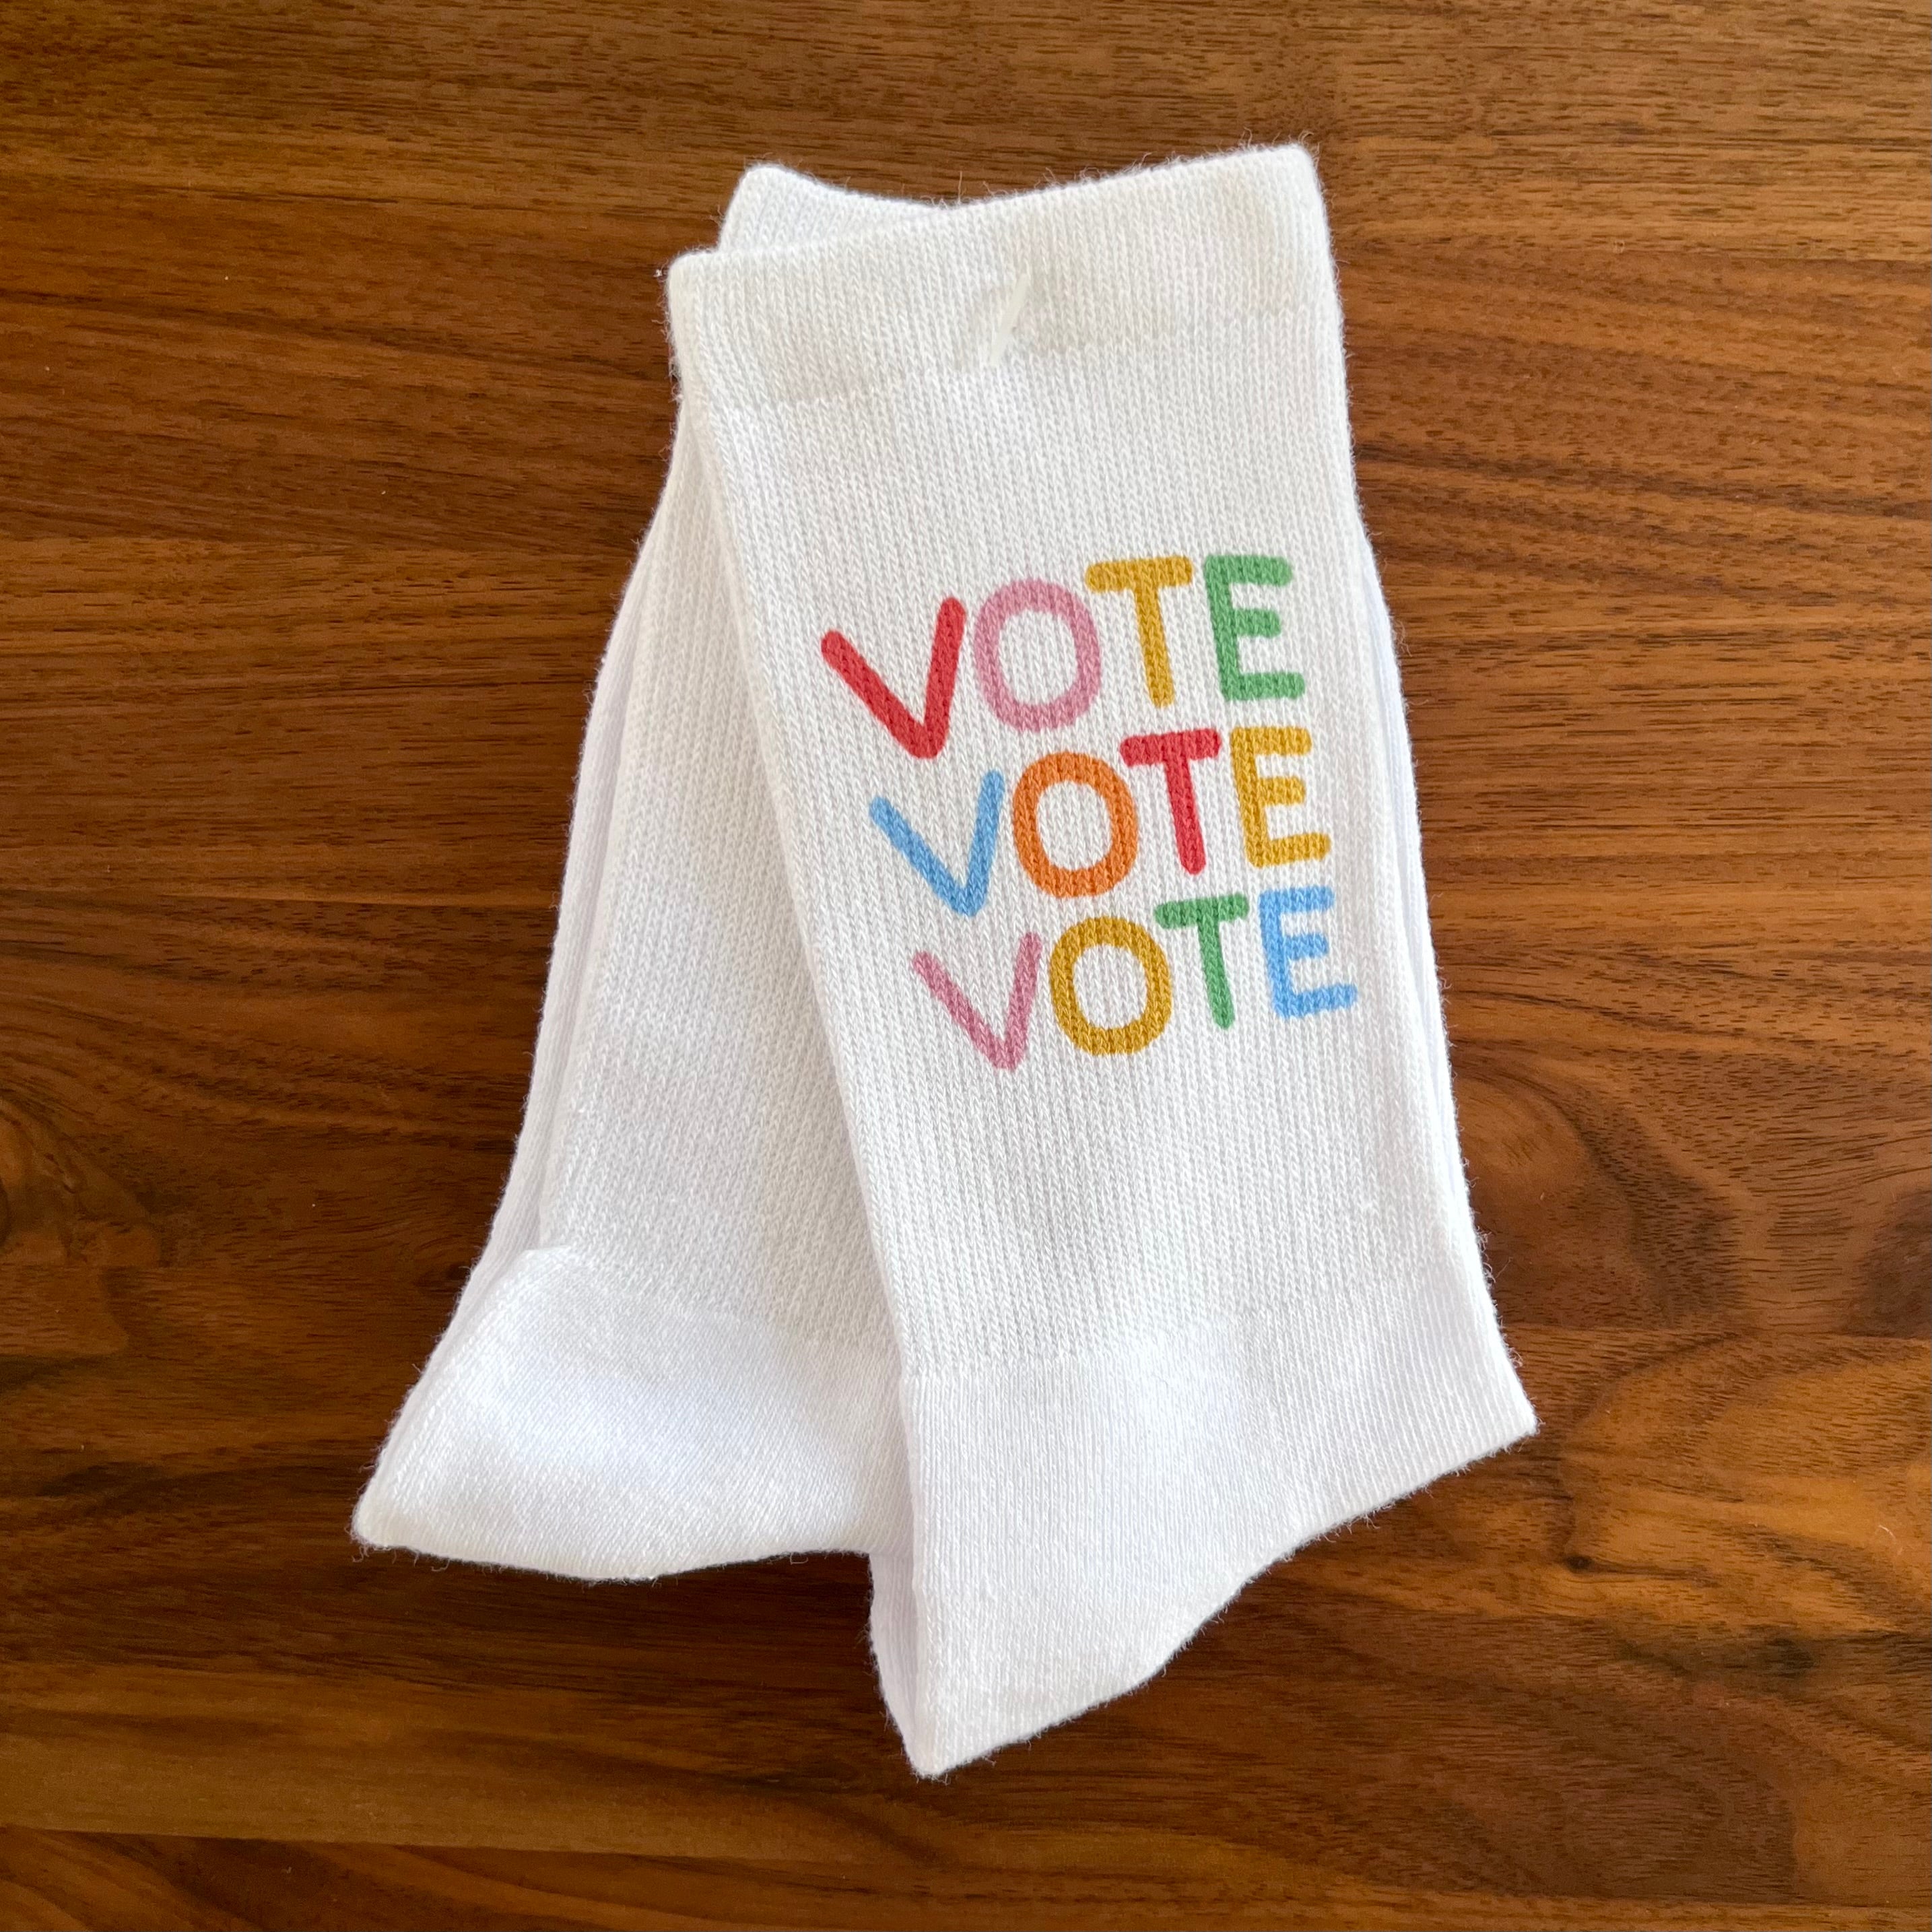 Vote Vote Vote Socks